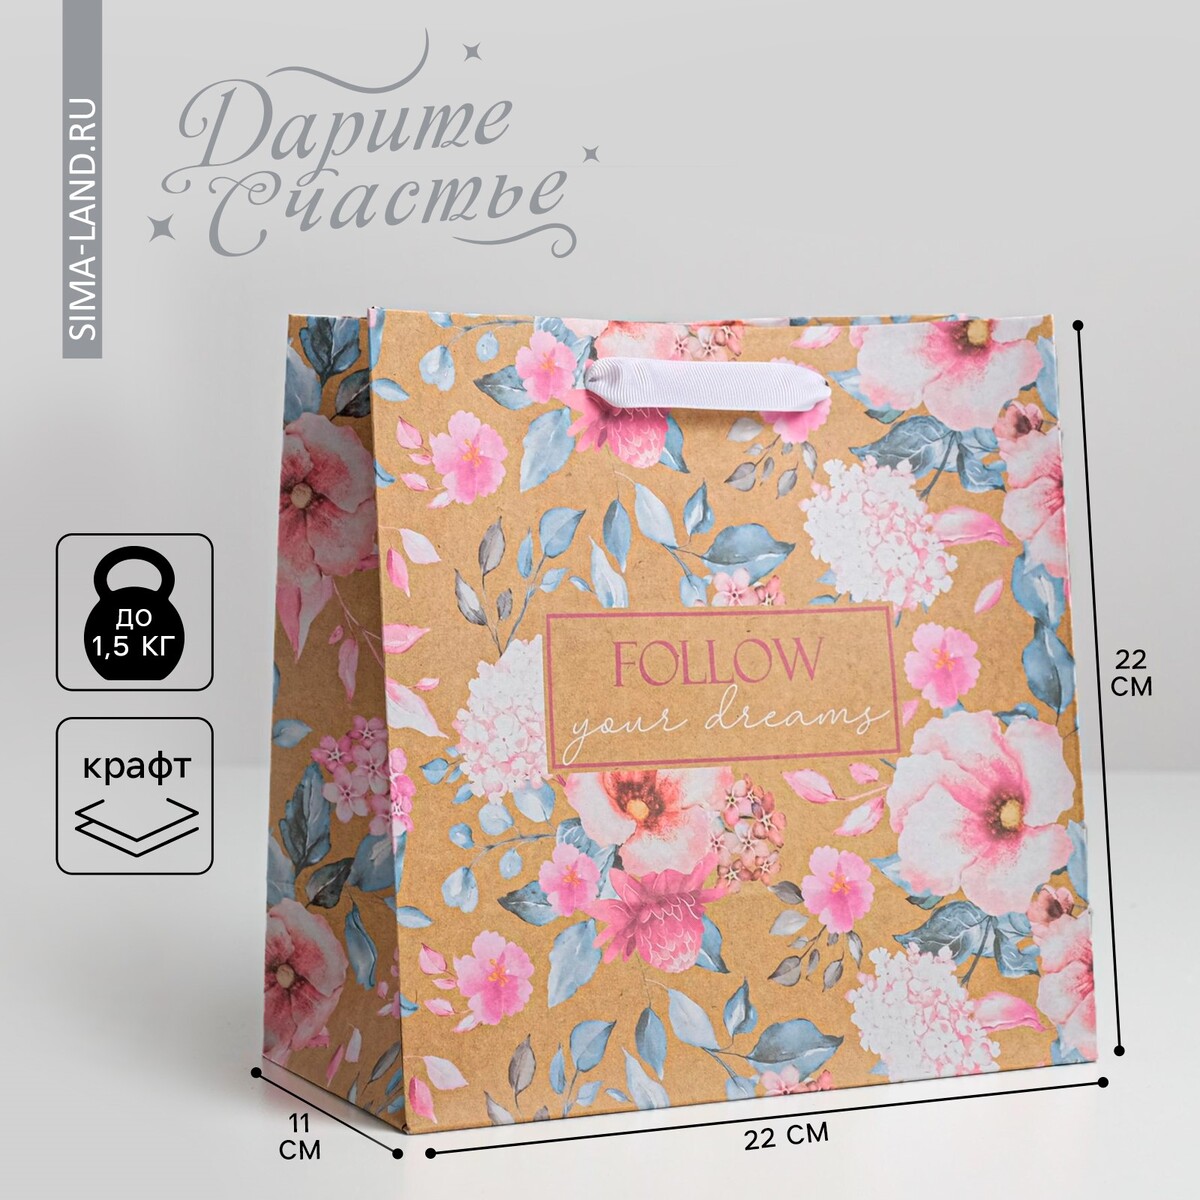 Пакет подарочный крафтовый квадратный, упаковка, подарочный пакет pink dreams а4